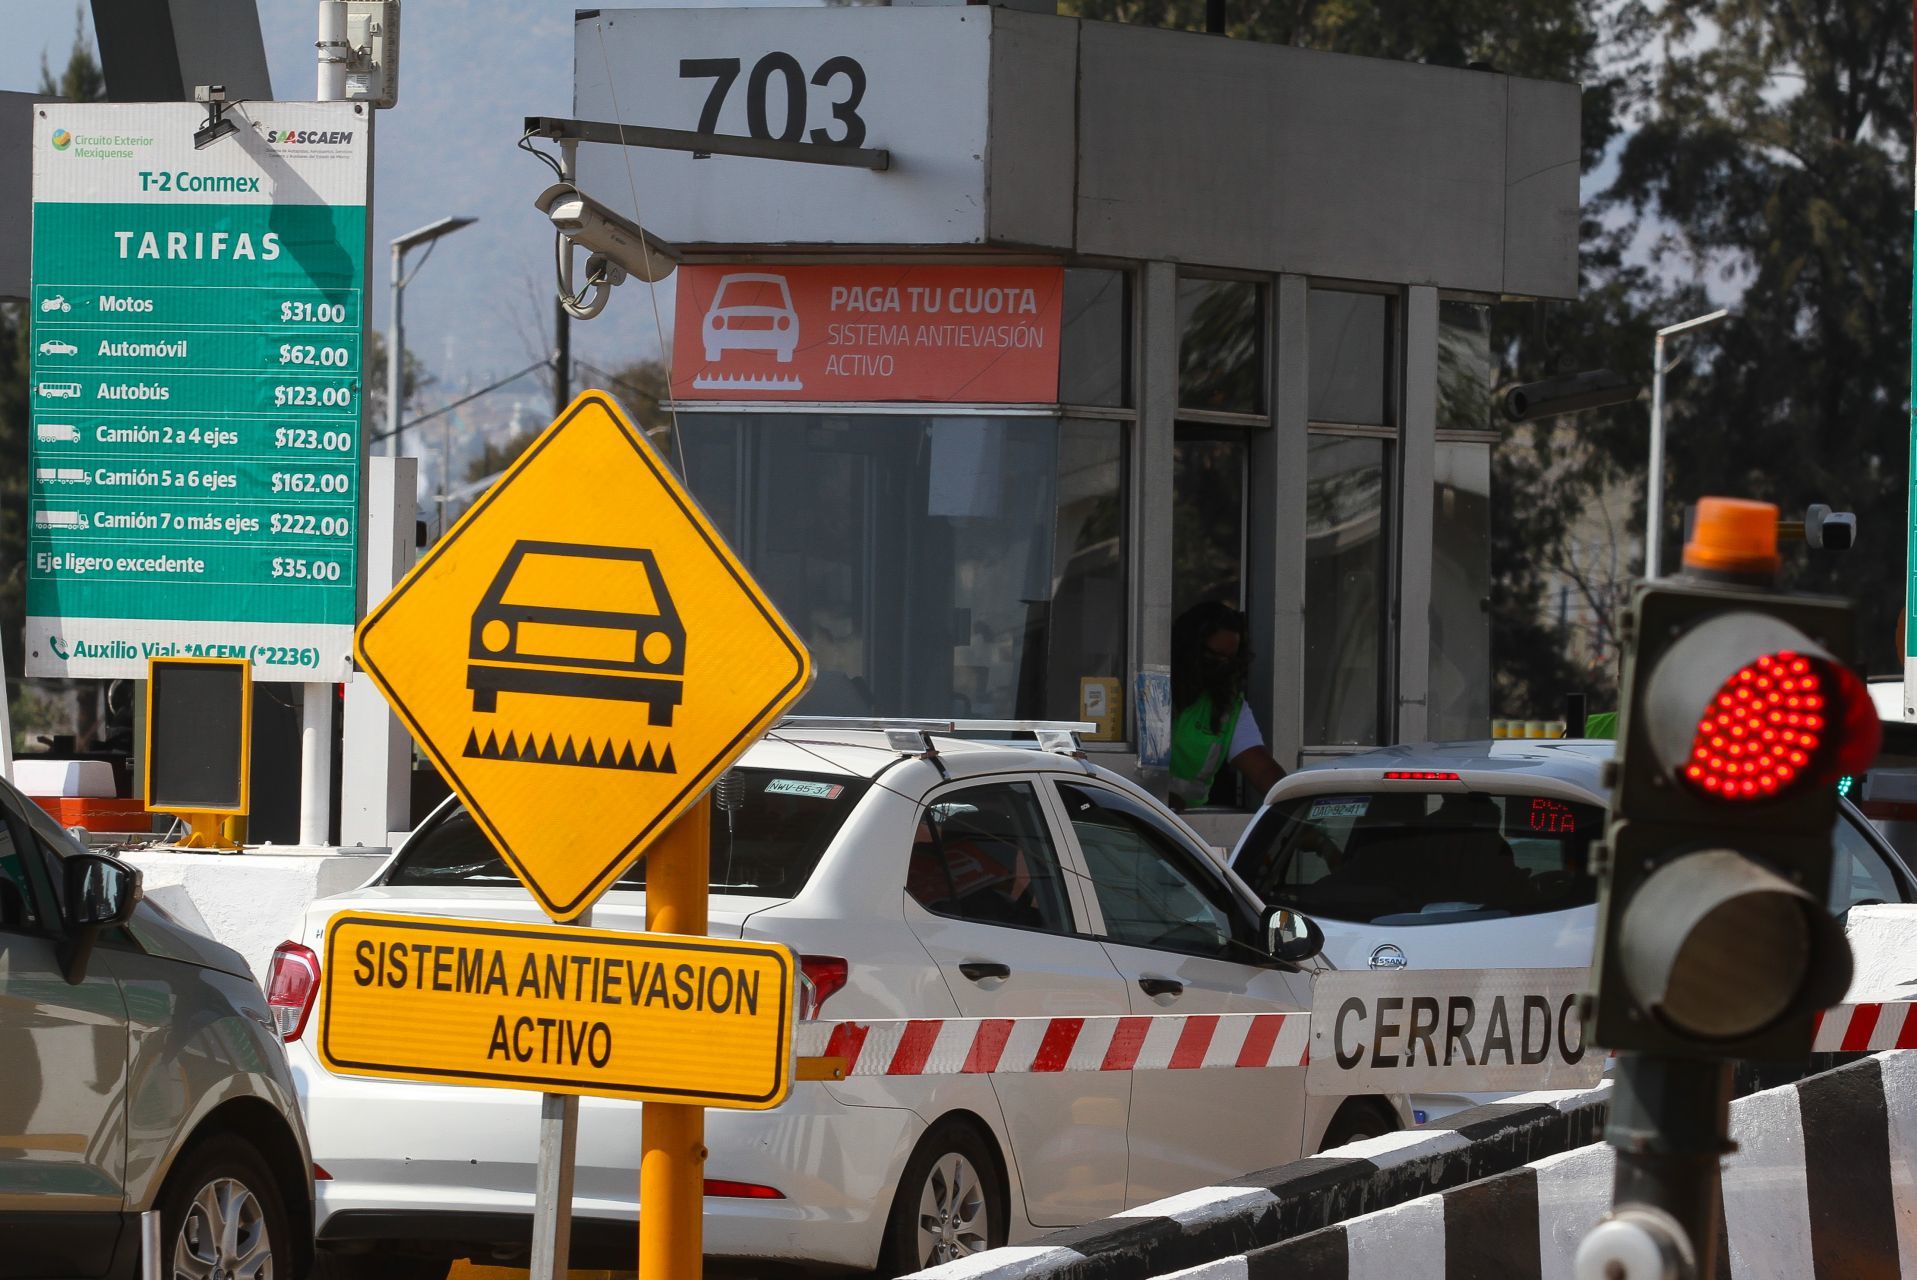 Vandalizan sistema poncha llantas de Ecatepec en protesta por su aplicación